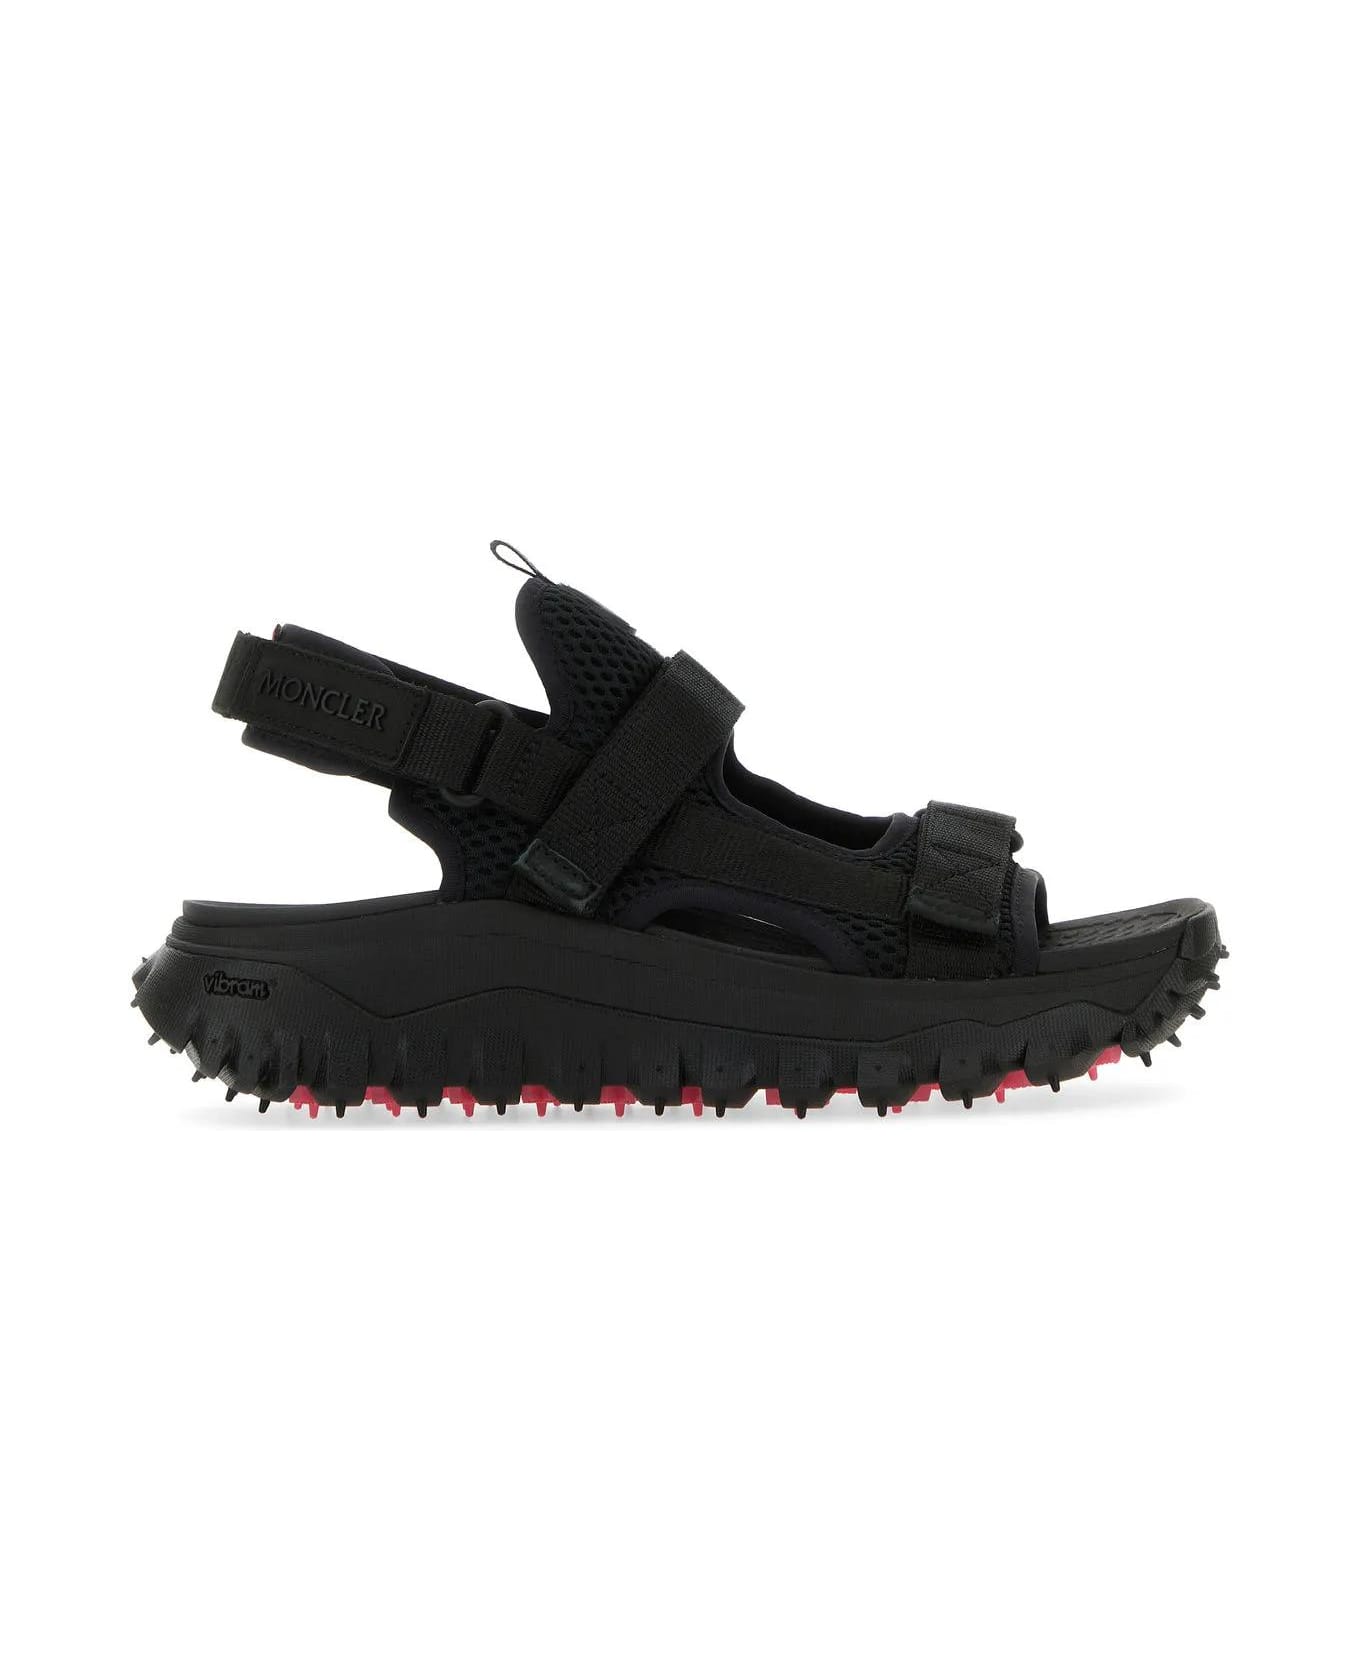 Moncler Black Nylon Trailgrip Vela Sandals - Black